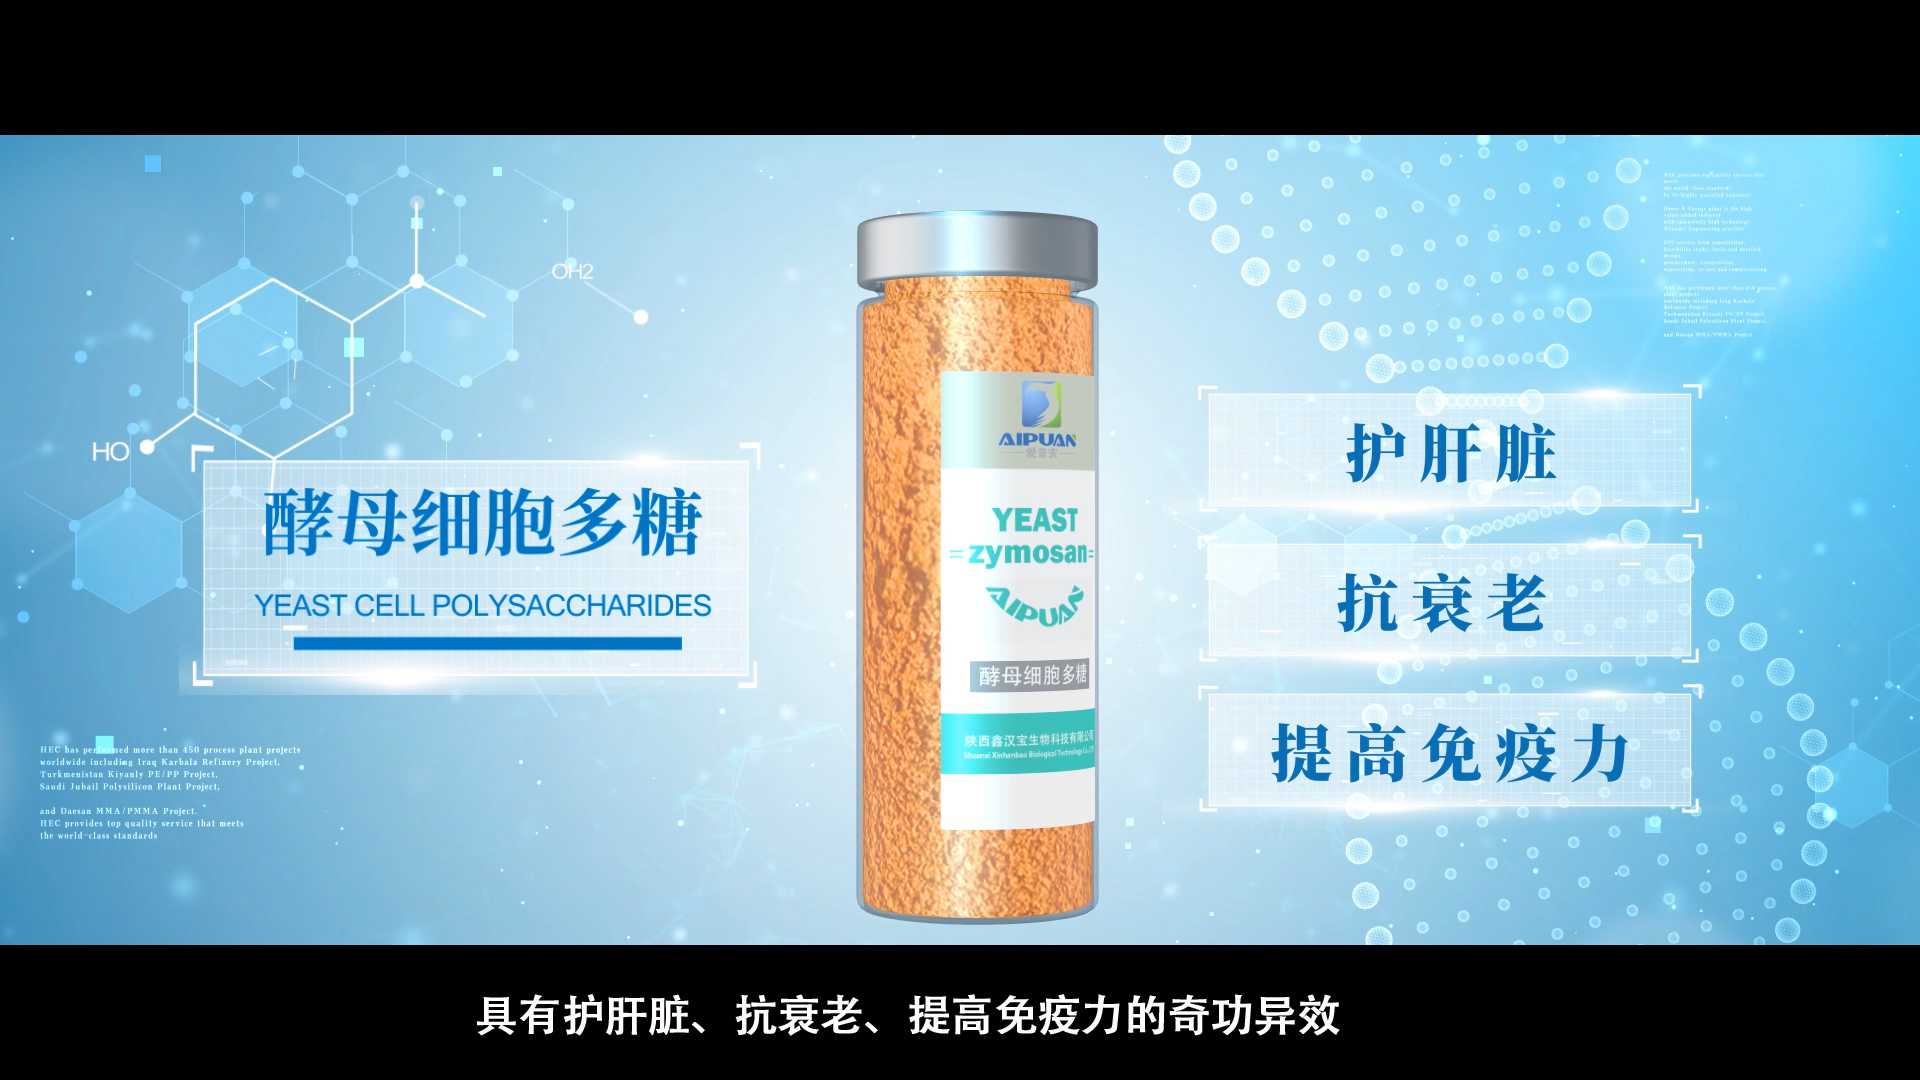 牧客影视制作的陕西鑫汉宝生物科技公司宣传片交片获赞